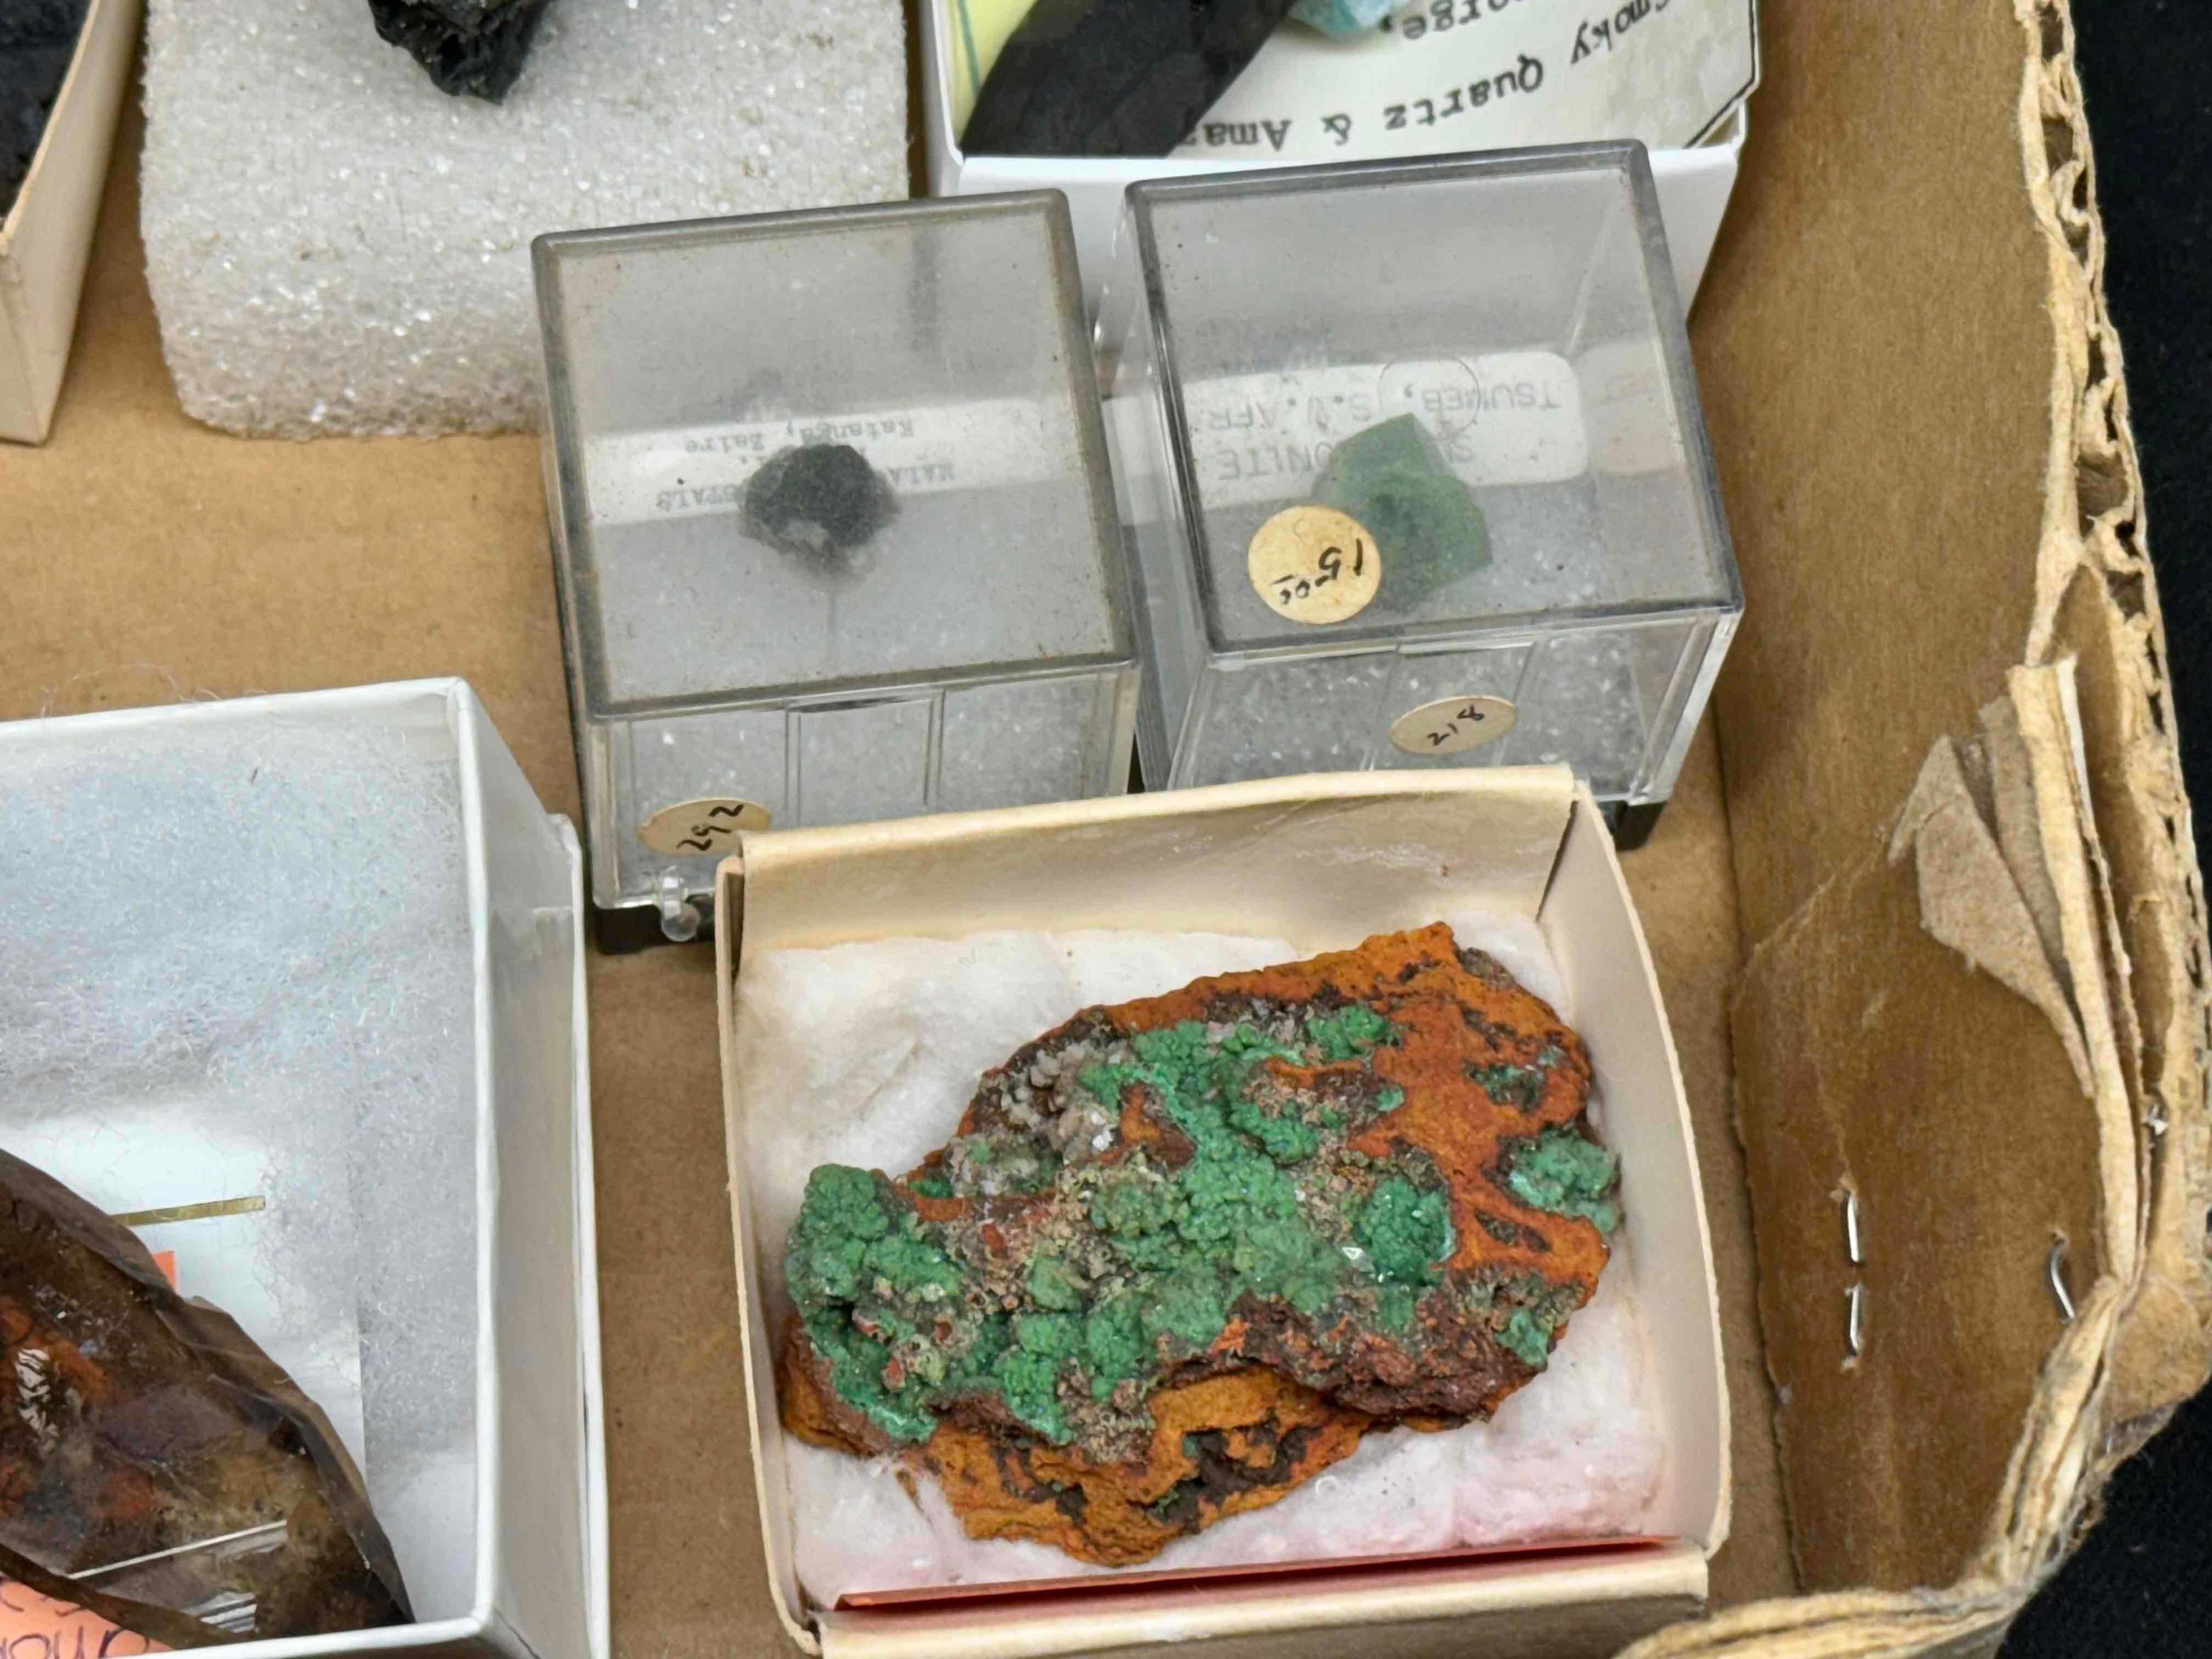 Flat of Assorted mineral specimens. Baryte, Calcite, Smoky Quartz, Diopsite more